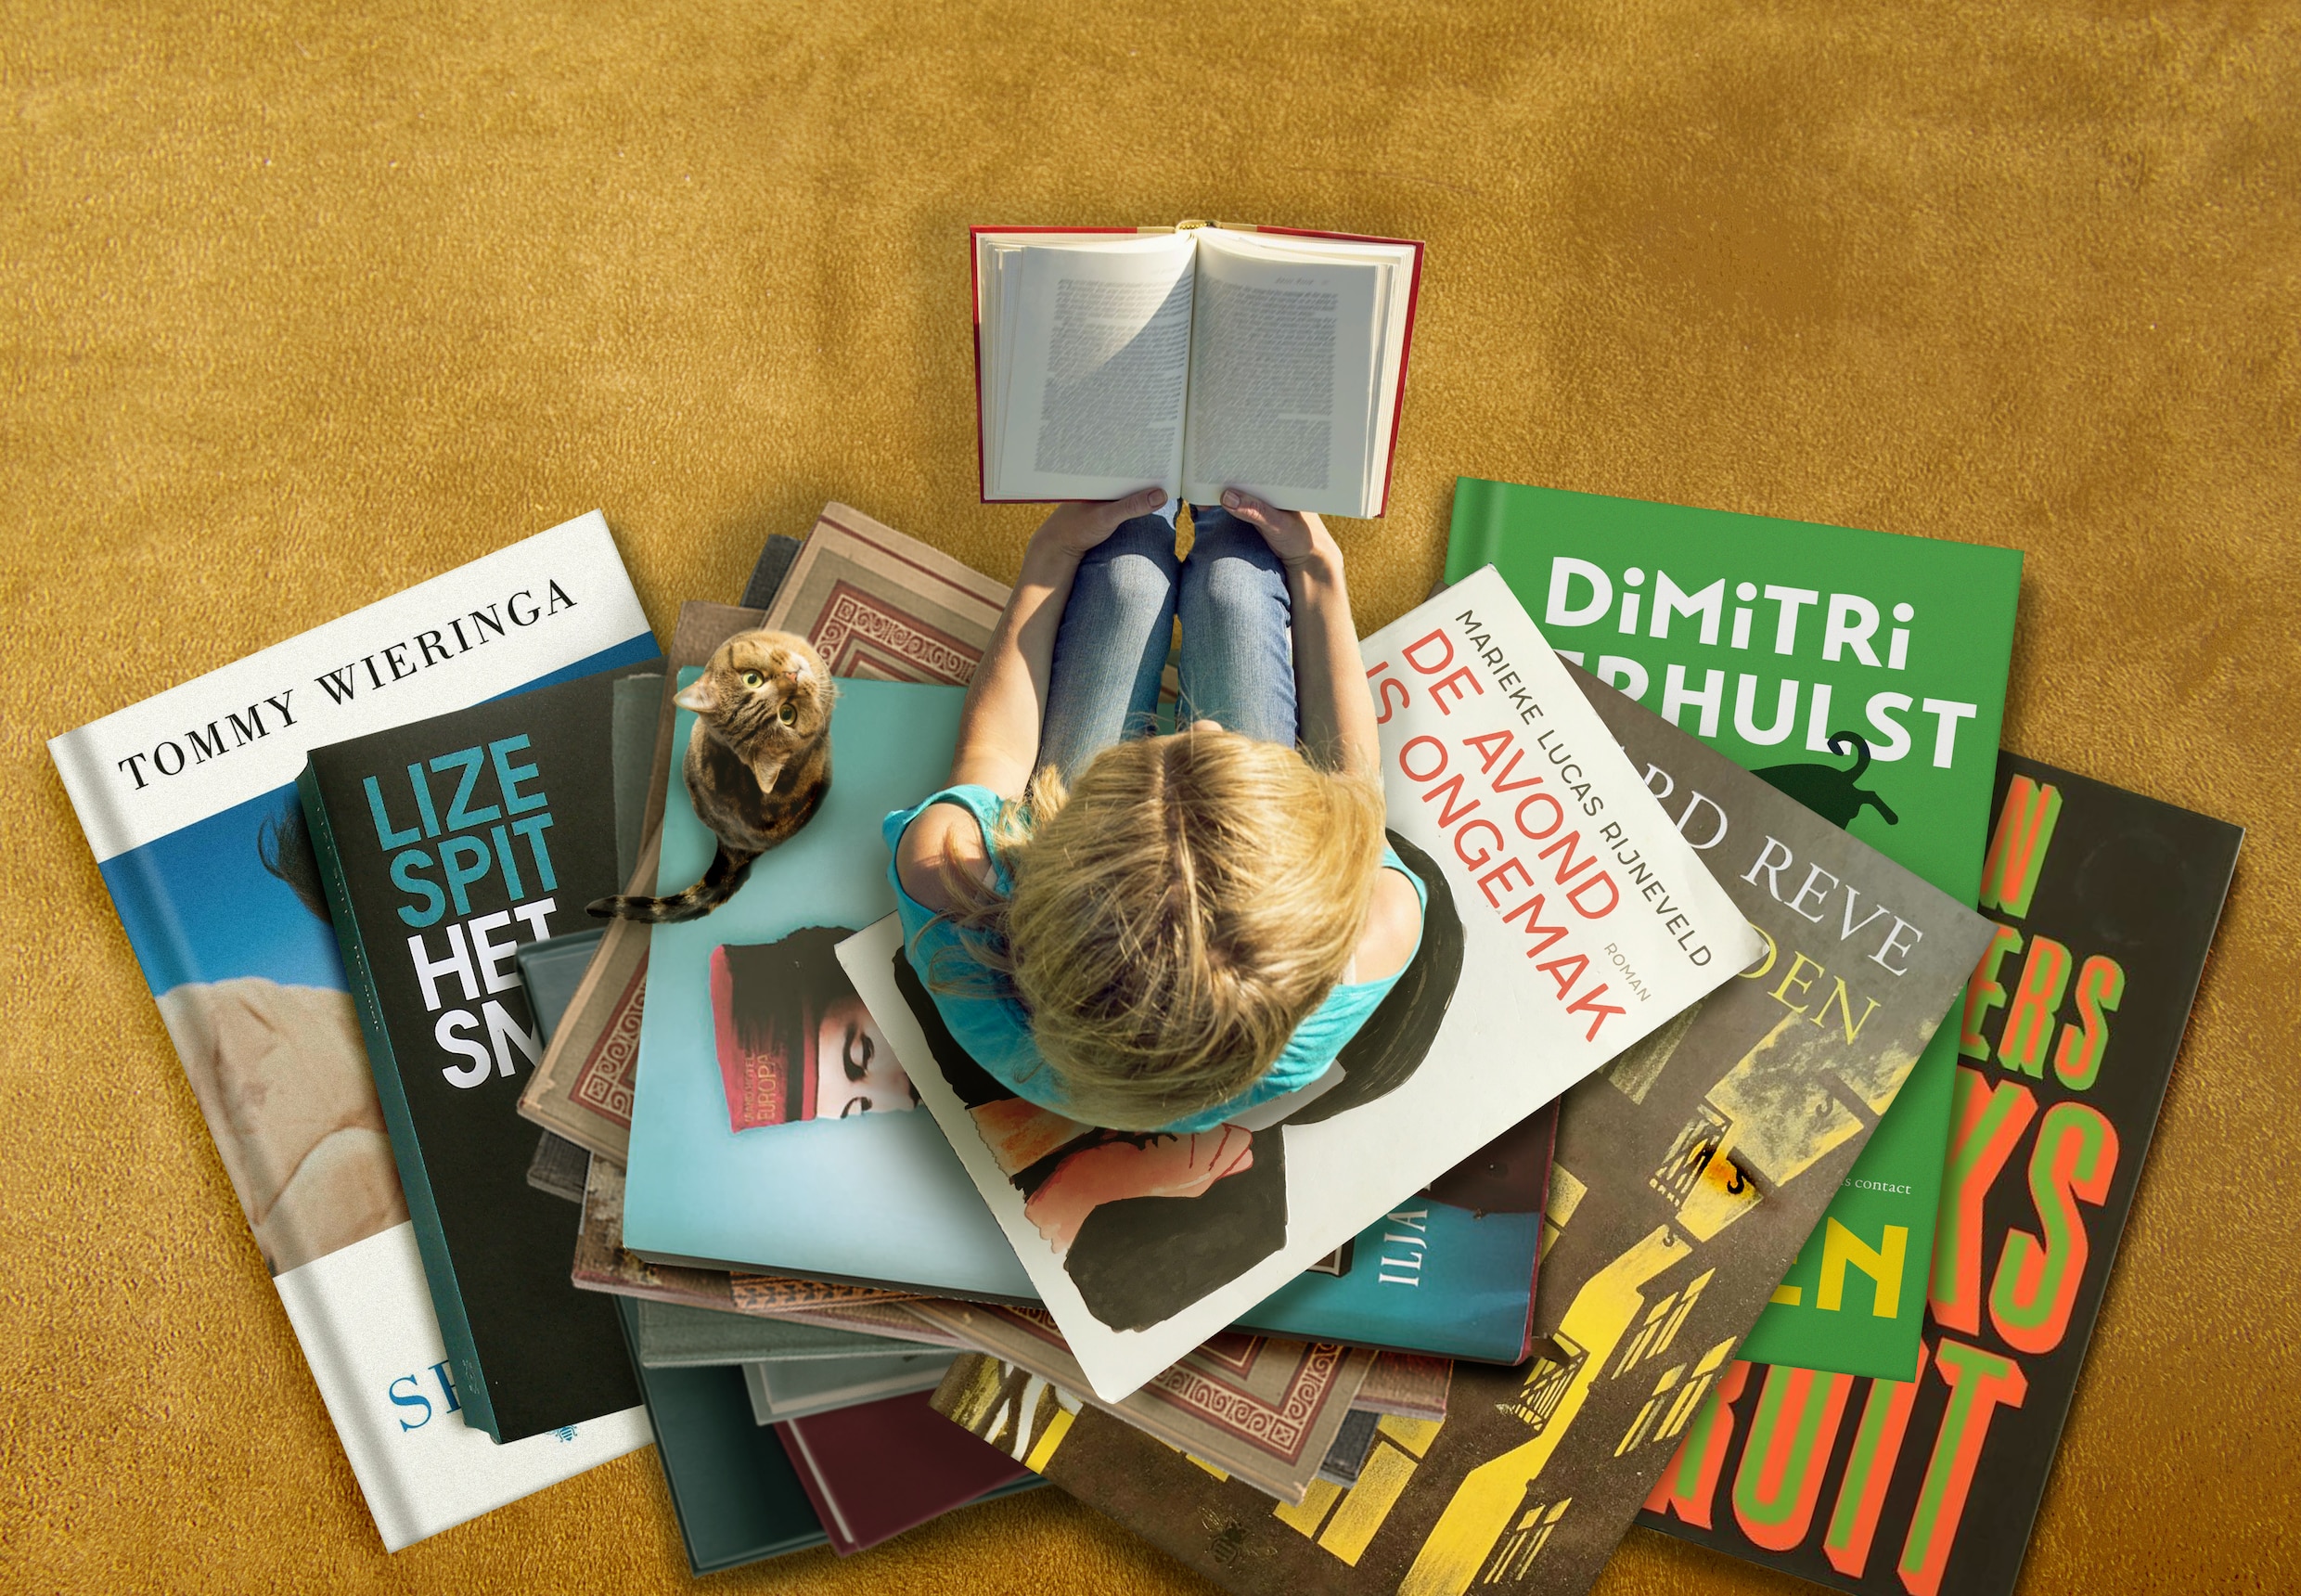 ‘Verplicht klassiekers lezen is een verrijking’: nieuwe top 100 zwengelt debat over literaire canon aan